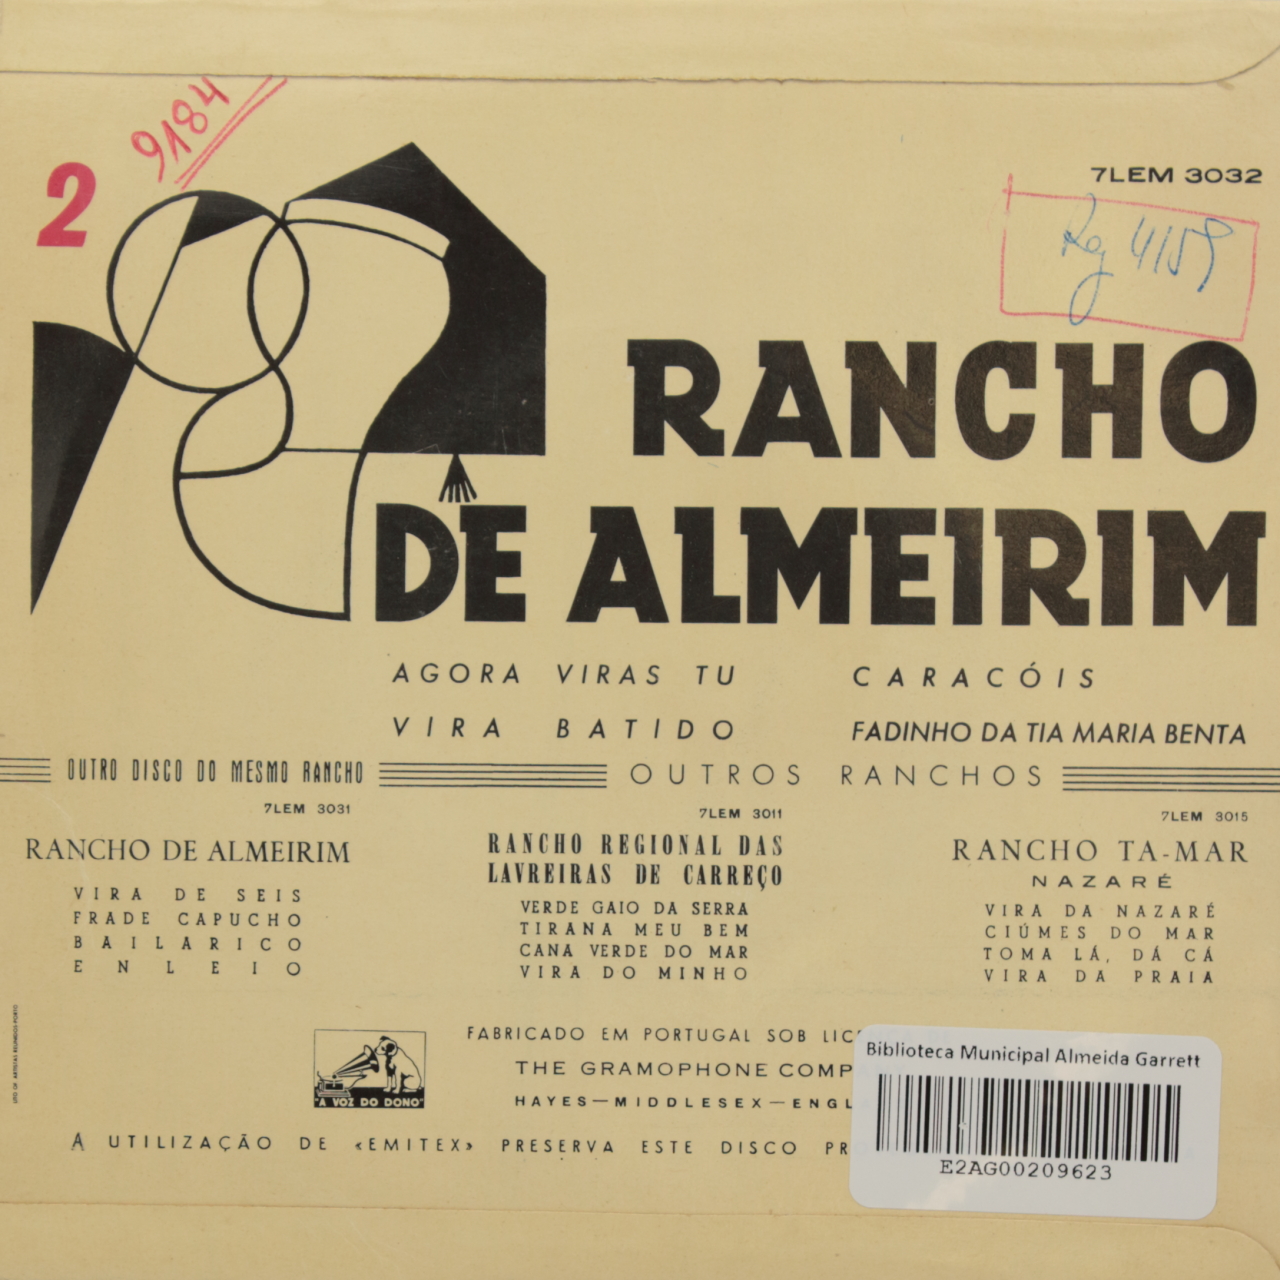 Rancho de Almeirim 2